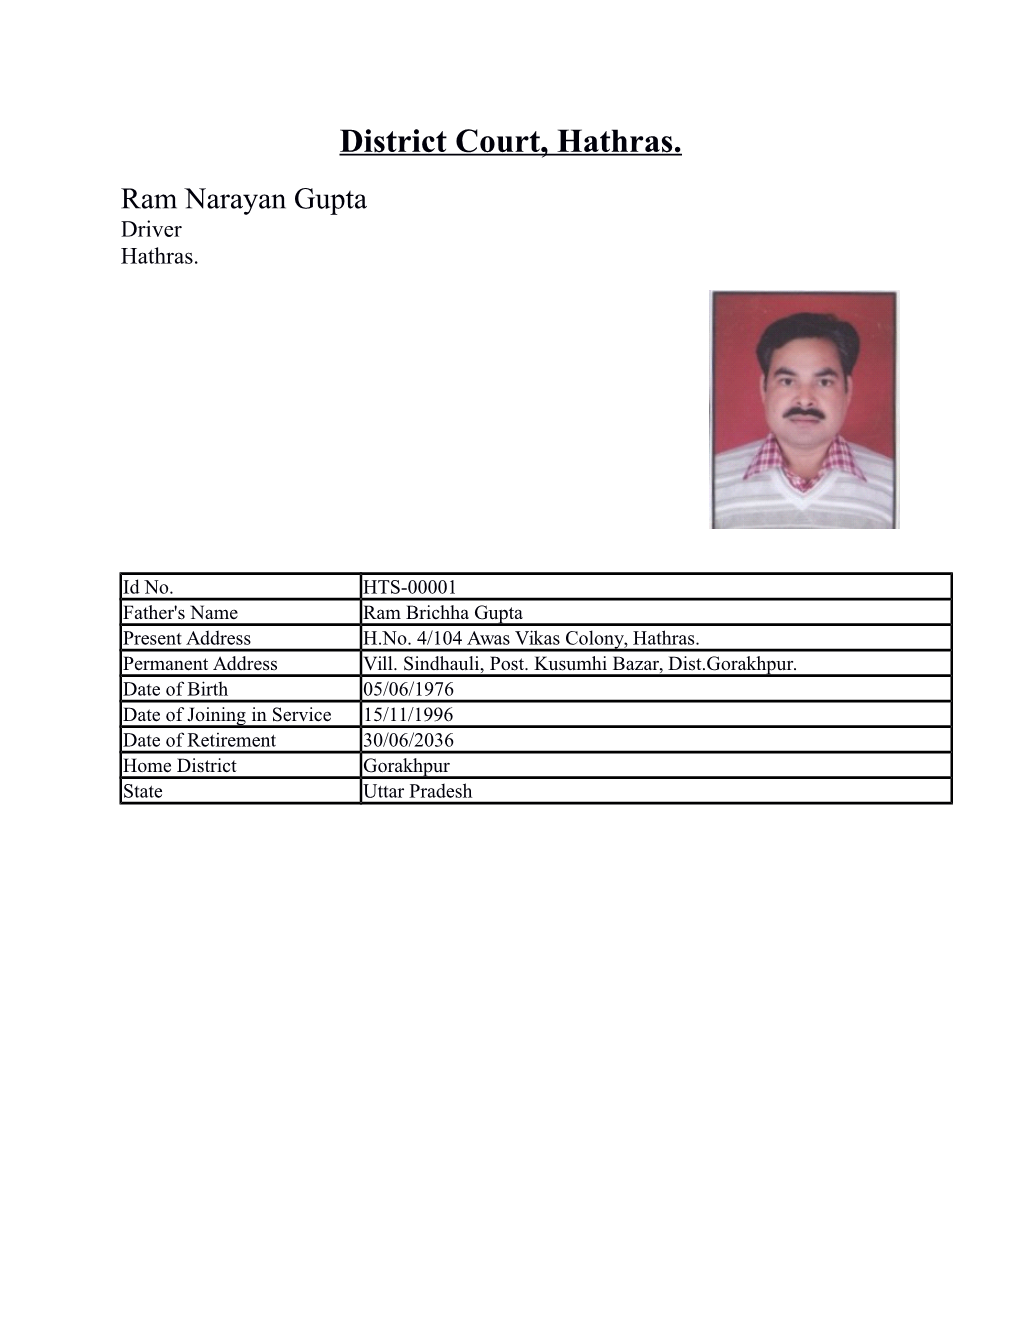 District Court, Hathras. Ram Narayan Gupta Driver Hathras